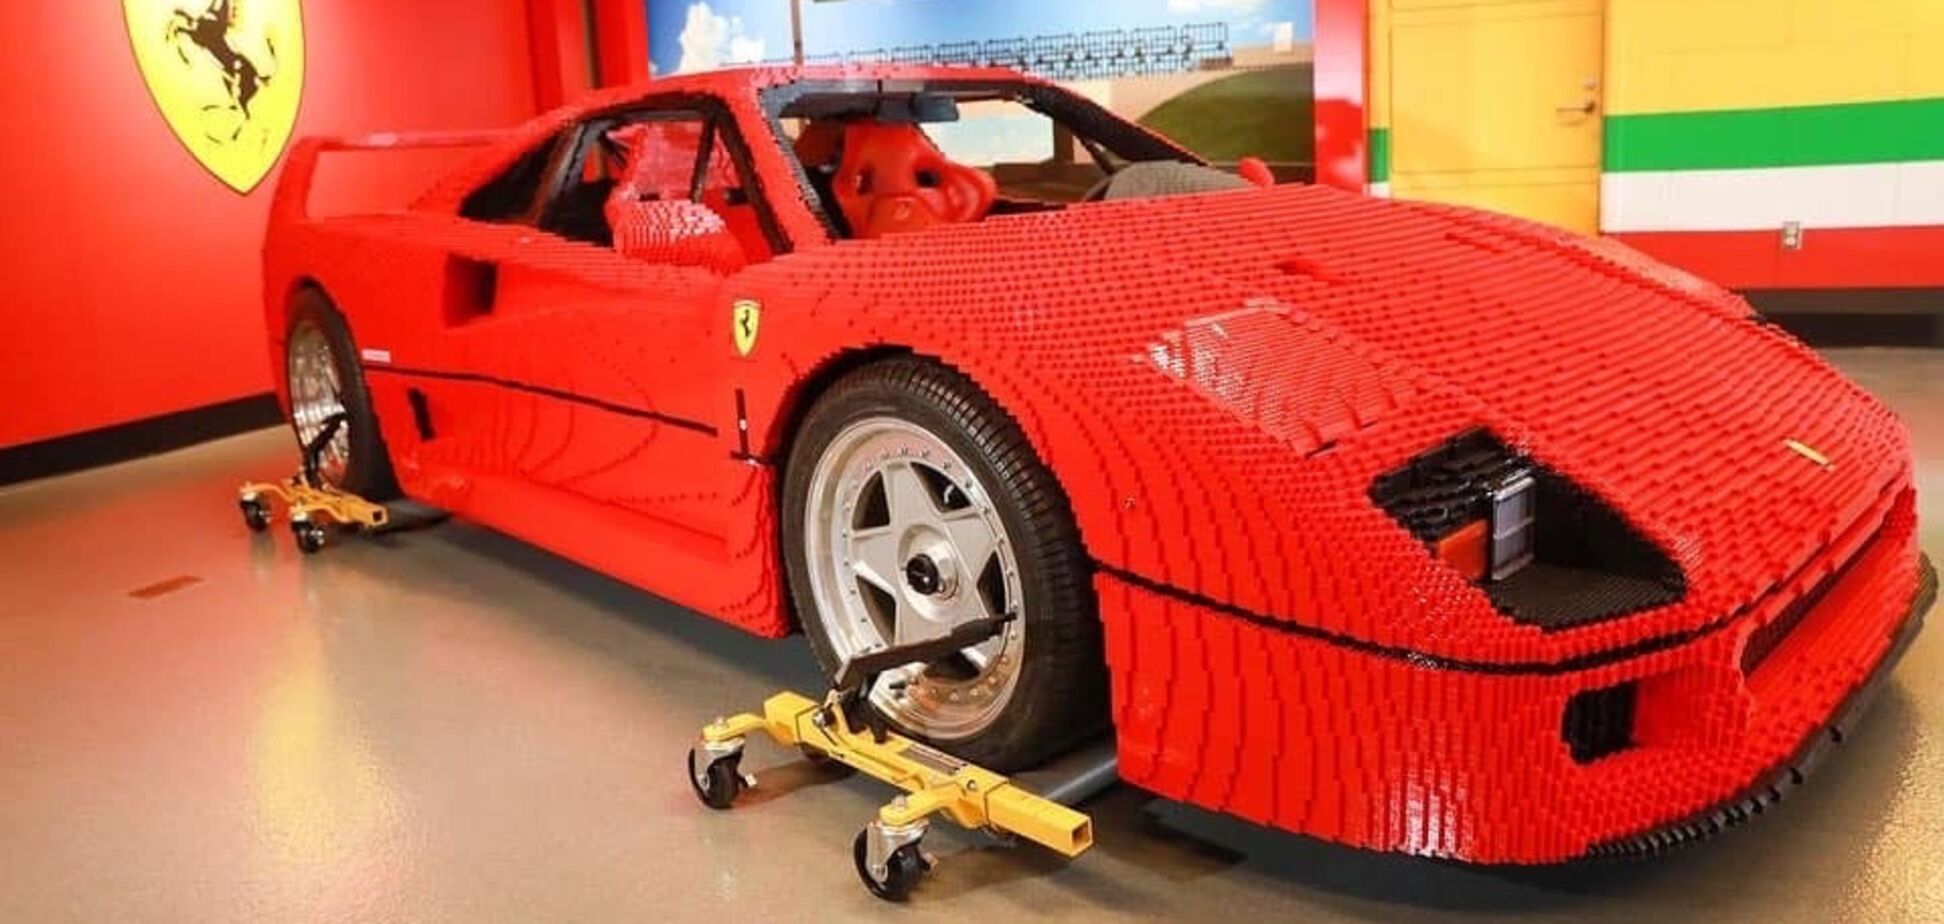 Lego построила полноразмерную модель Ferrari F40